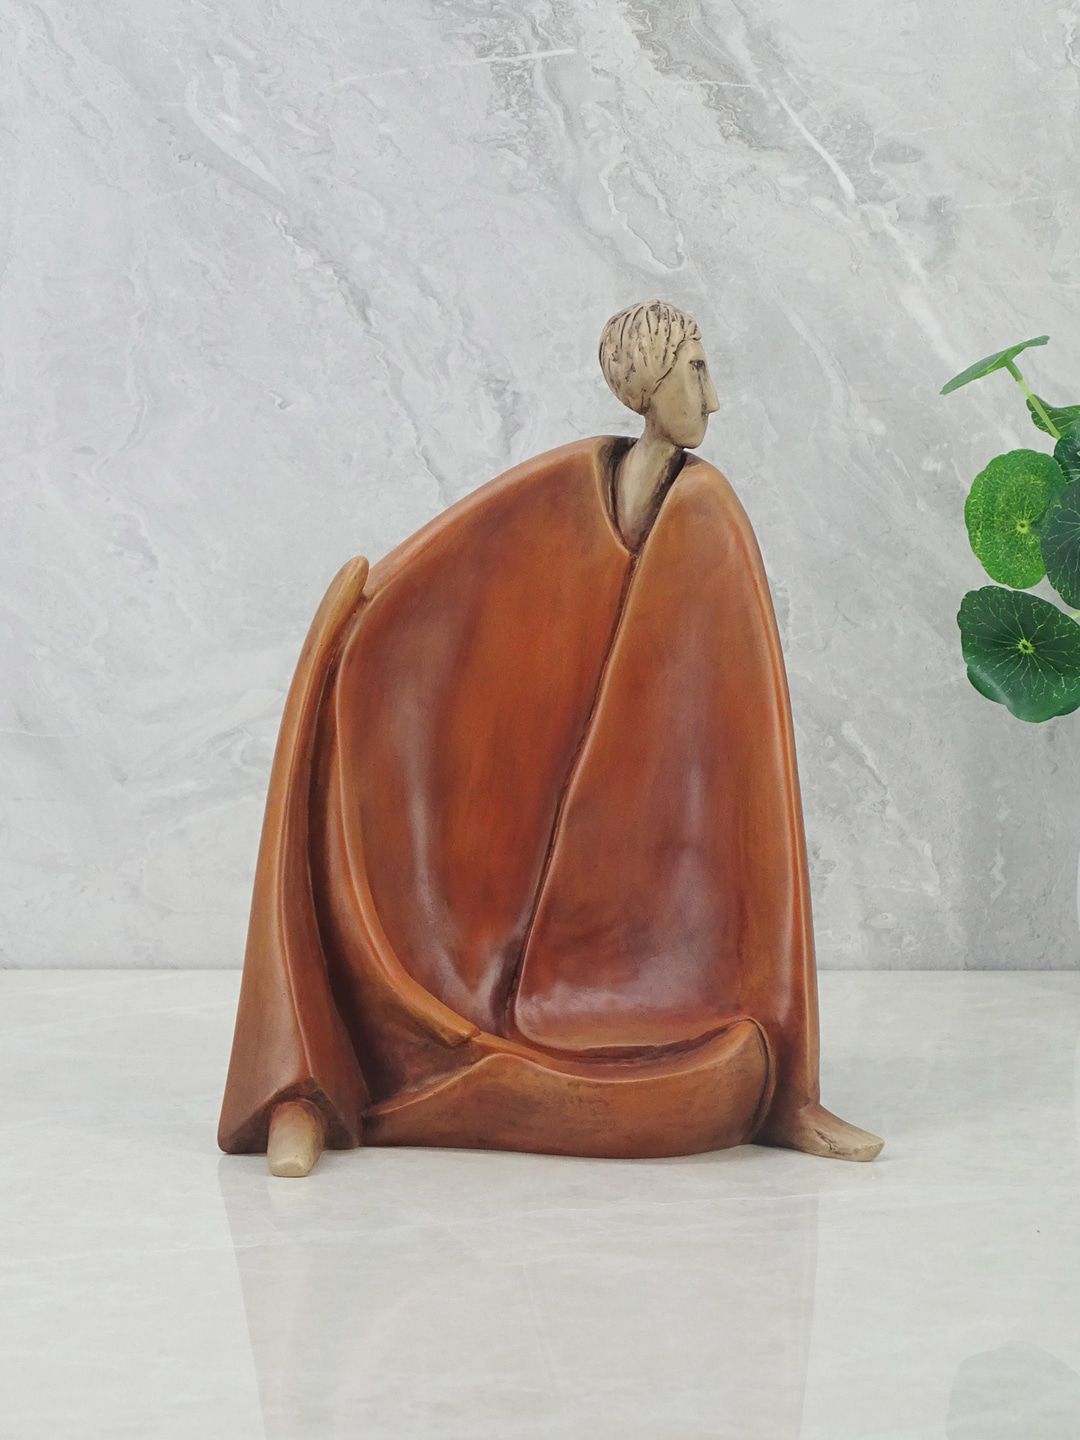 HomeTown Brown Alpine Polyresin Man Sitting Figurine Showpiece Price in India